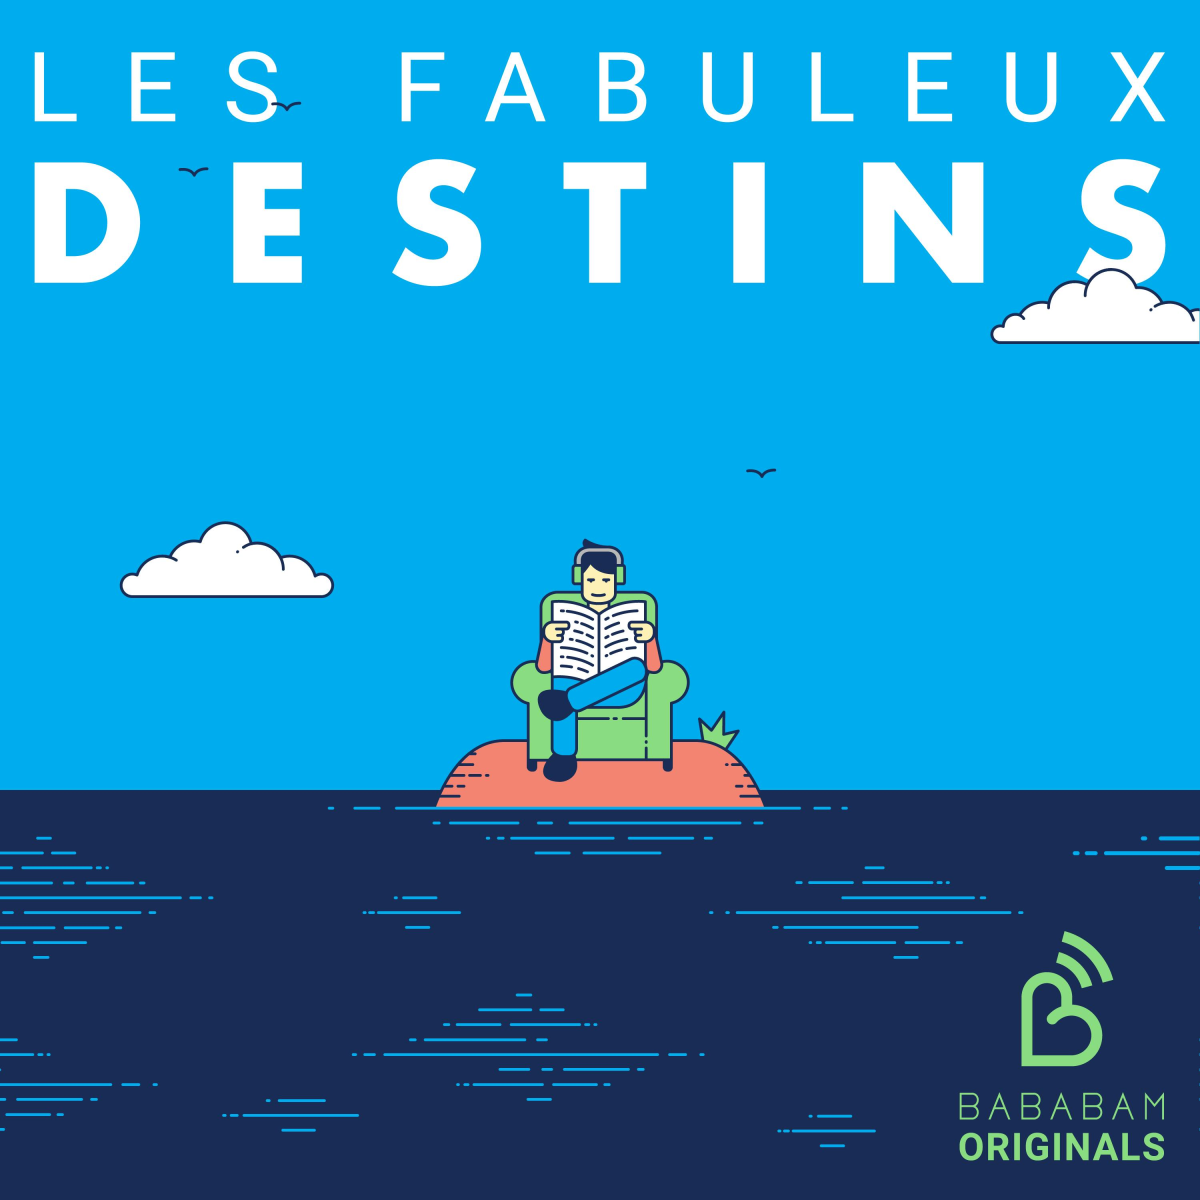 Le podcast Les Fabuleux Destins fête ses 5 ans !